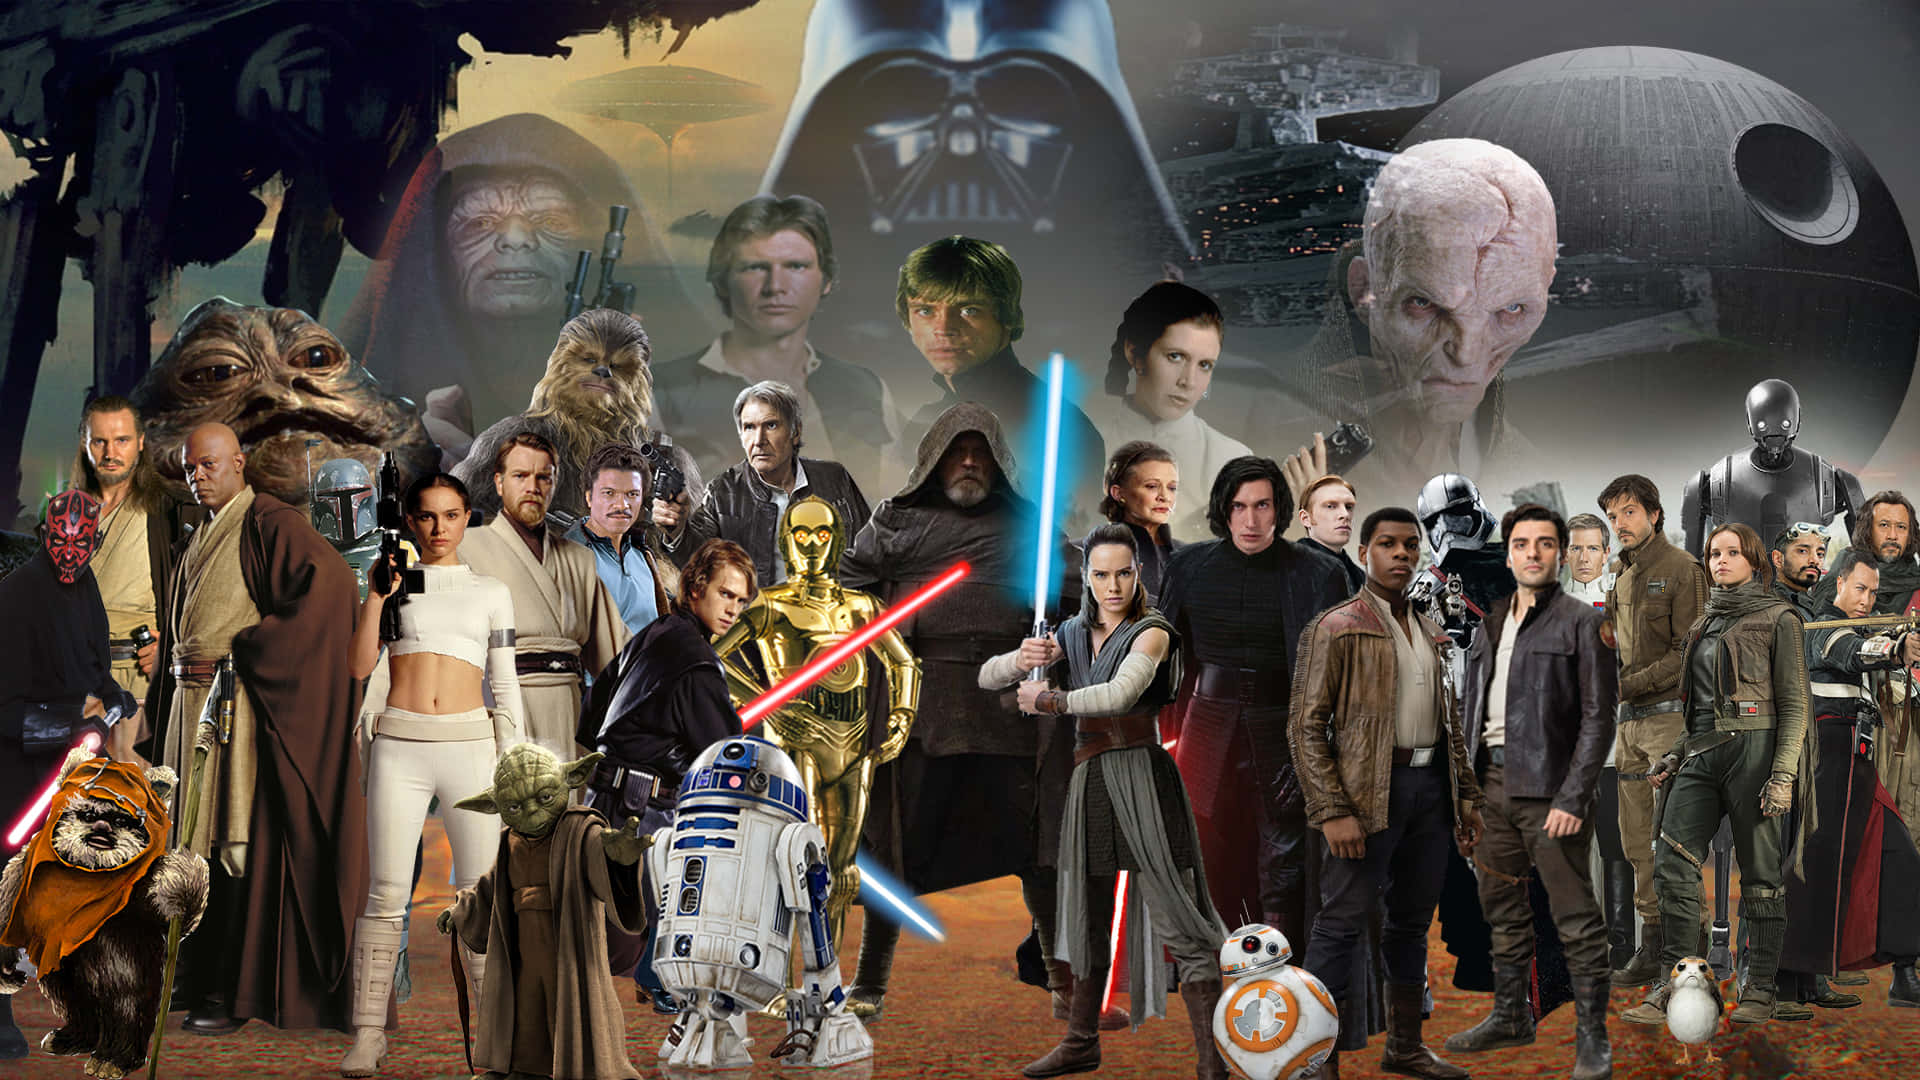 Bildhjältarna I Rebellionen - Star Wars Karaktärer Wallpaper